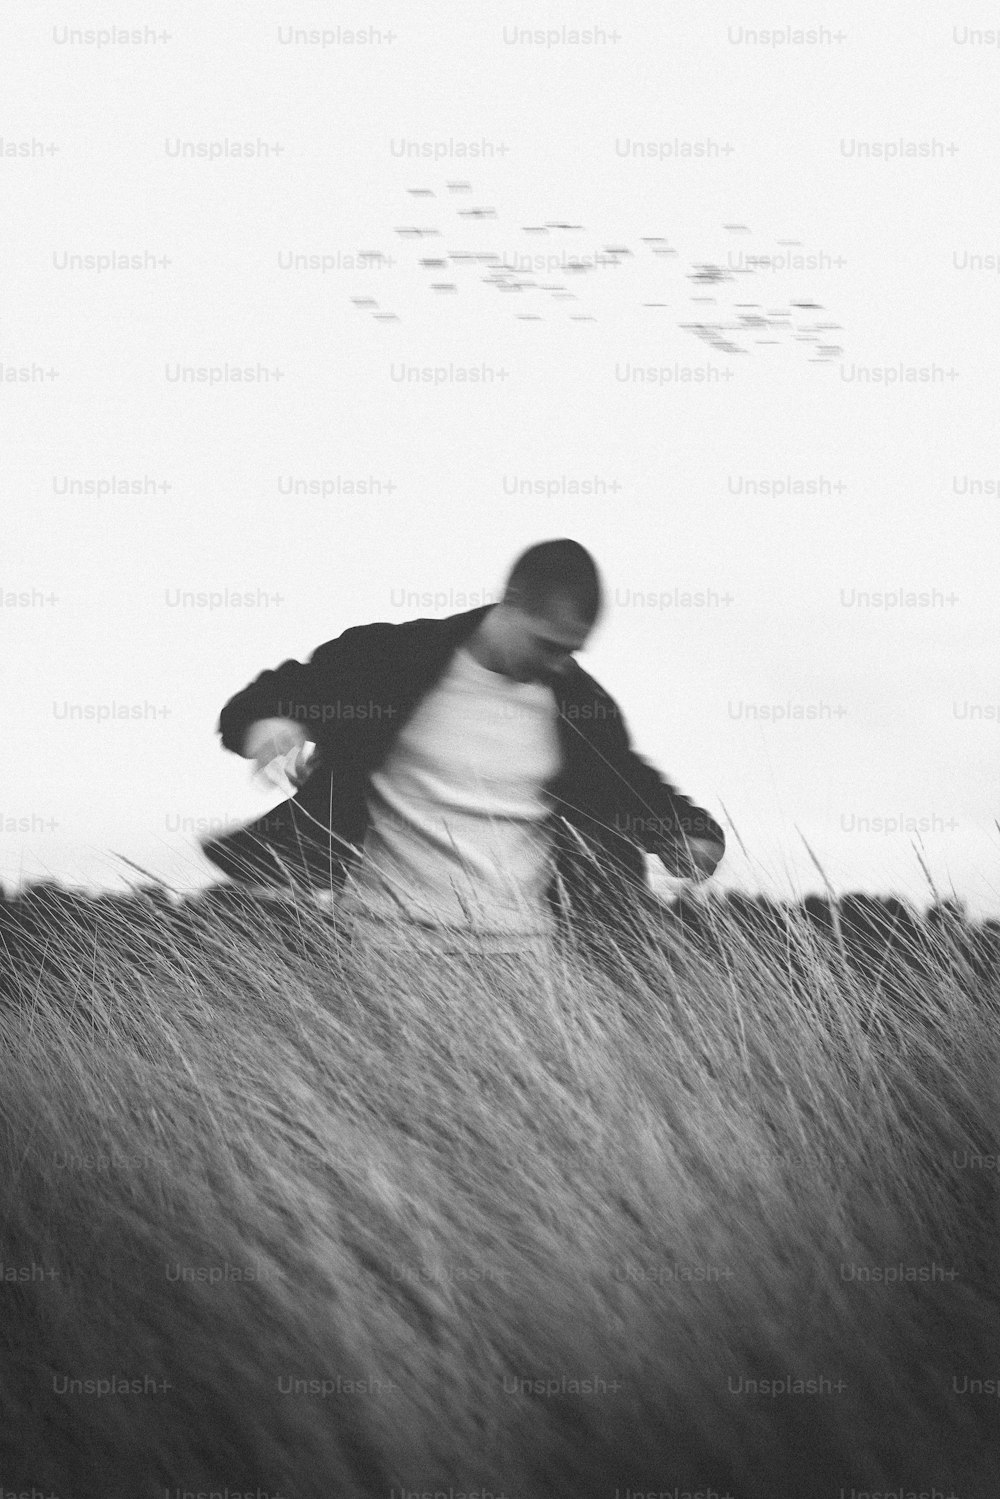 키 큰 풀밭을 걷는 남자의 흑백 사진